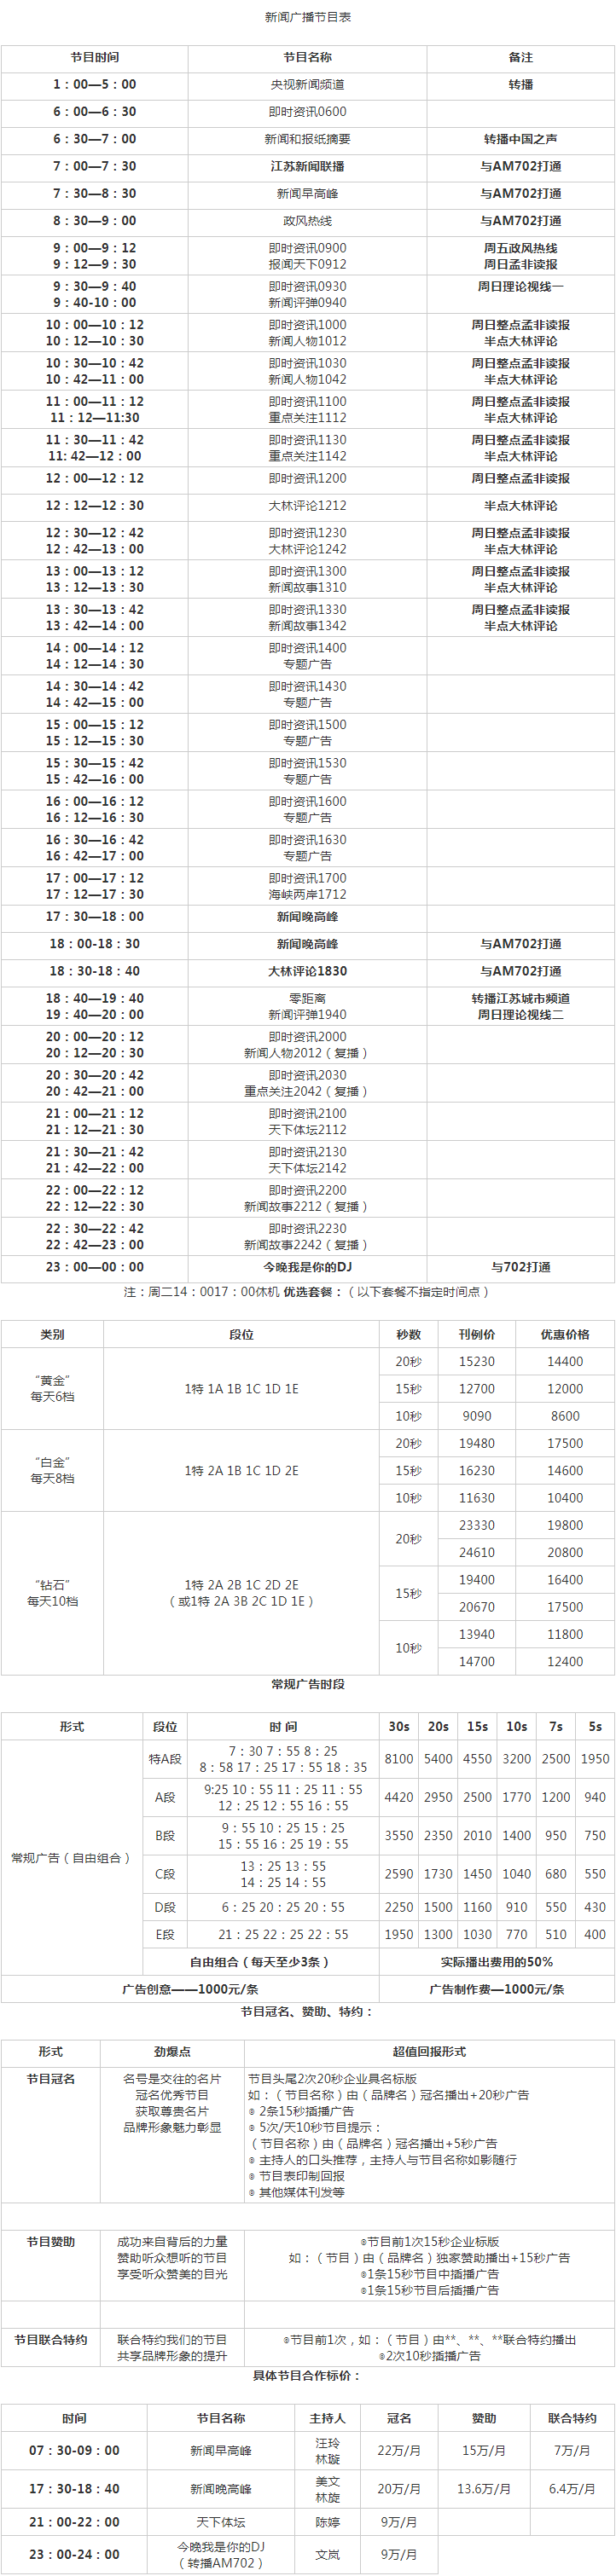 2010江苏人民广播电台新闻广播FM93.7广告报价表.png